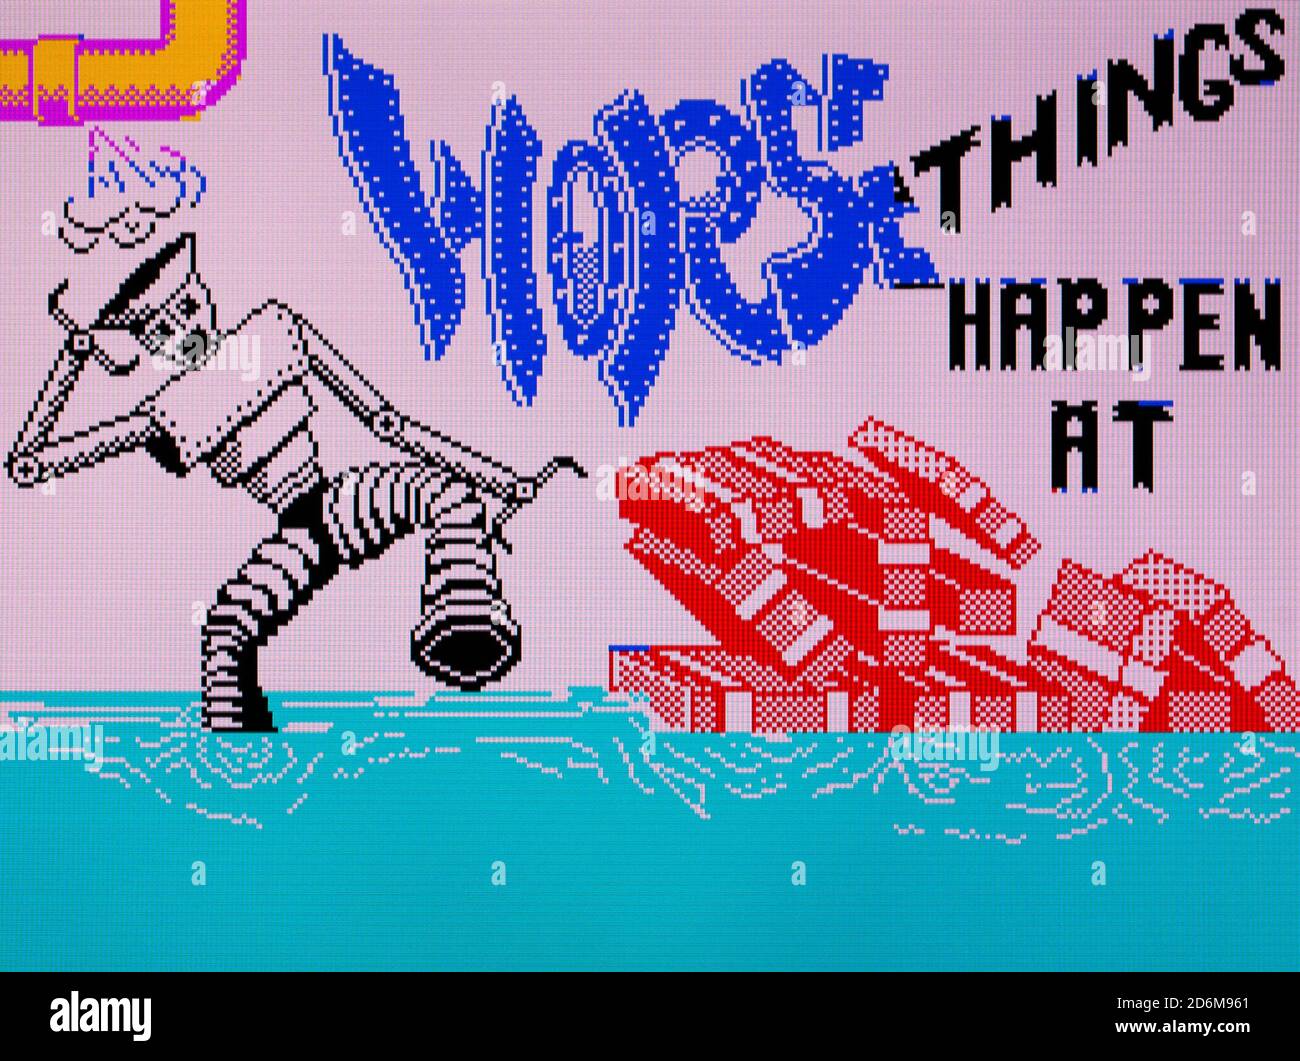 Les pires choses se produisent à la mer - Sinclair ZX Spectrum Videogame - usage éditorial seulement Banque D'Images